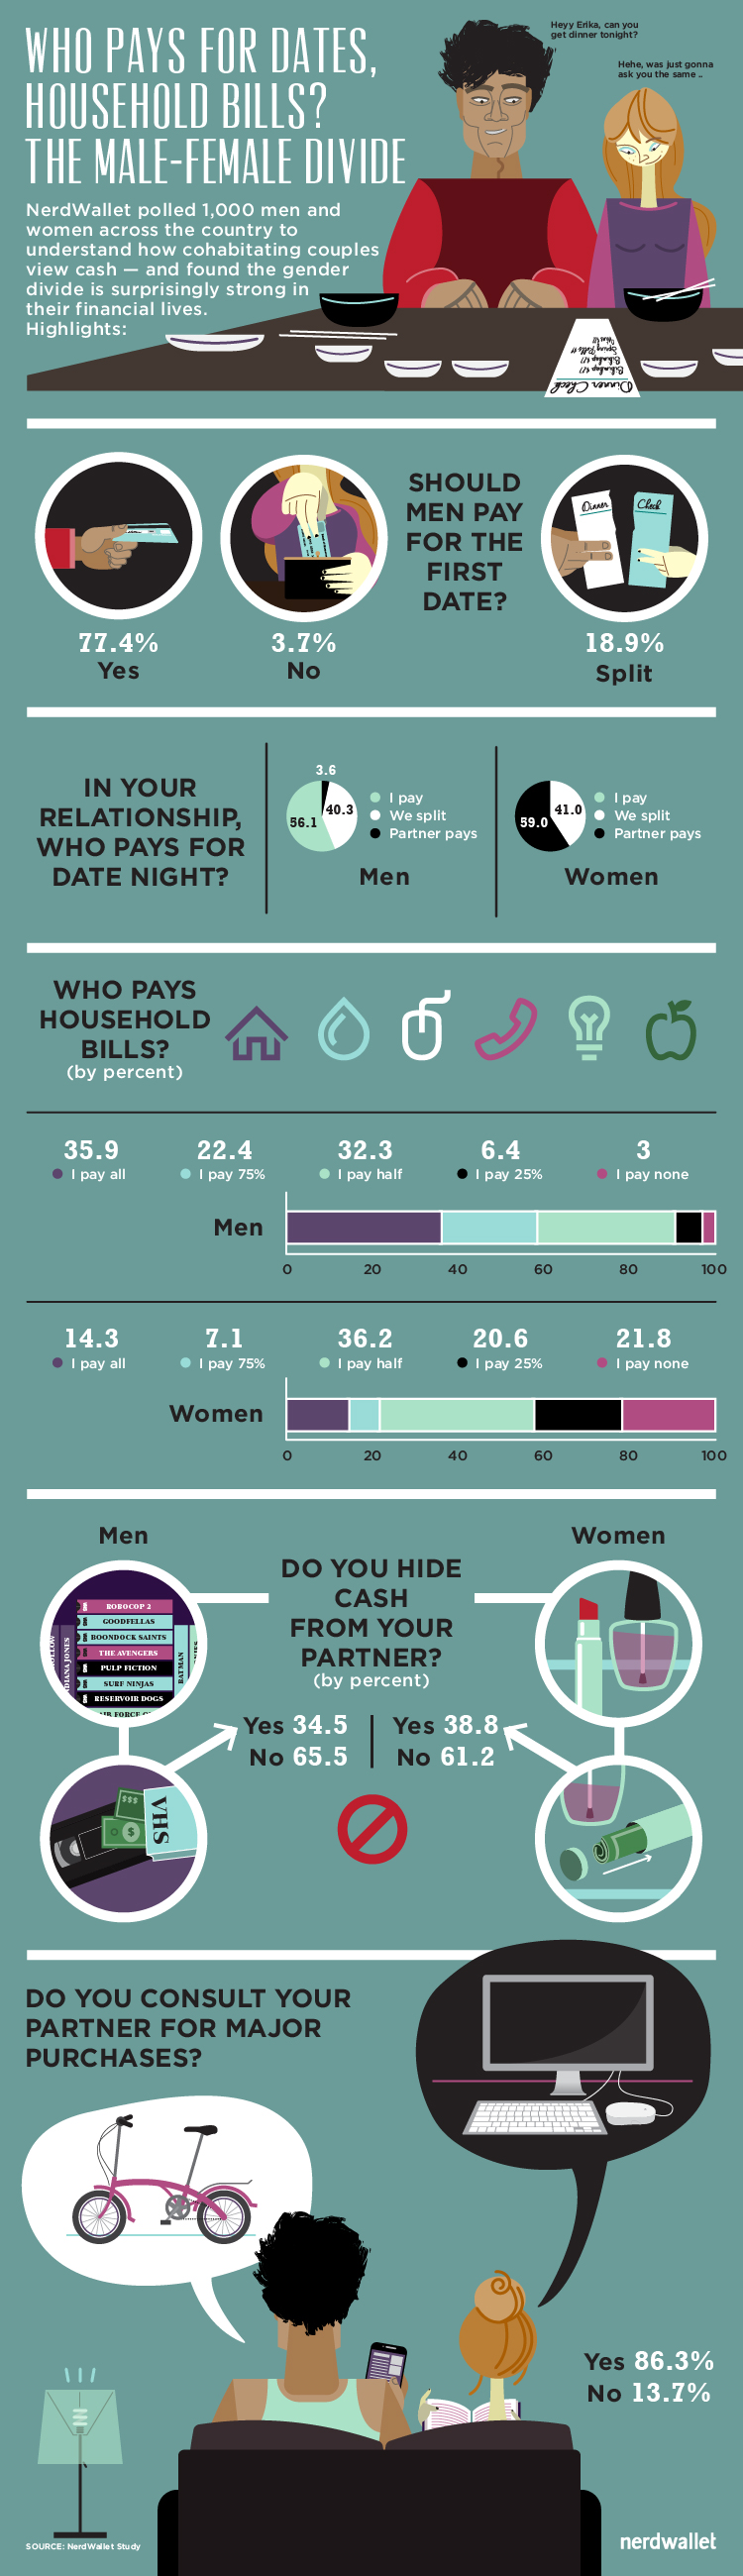 finances_male_female_divide_full_infographic_750x2600px_091614-72ppi-01.jpg